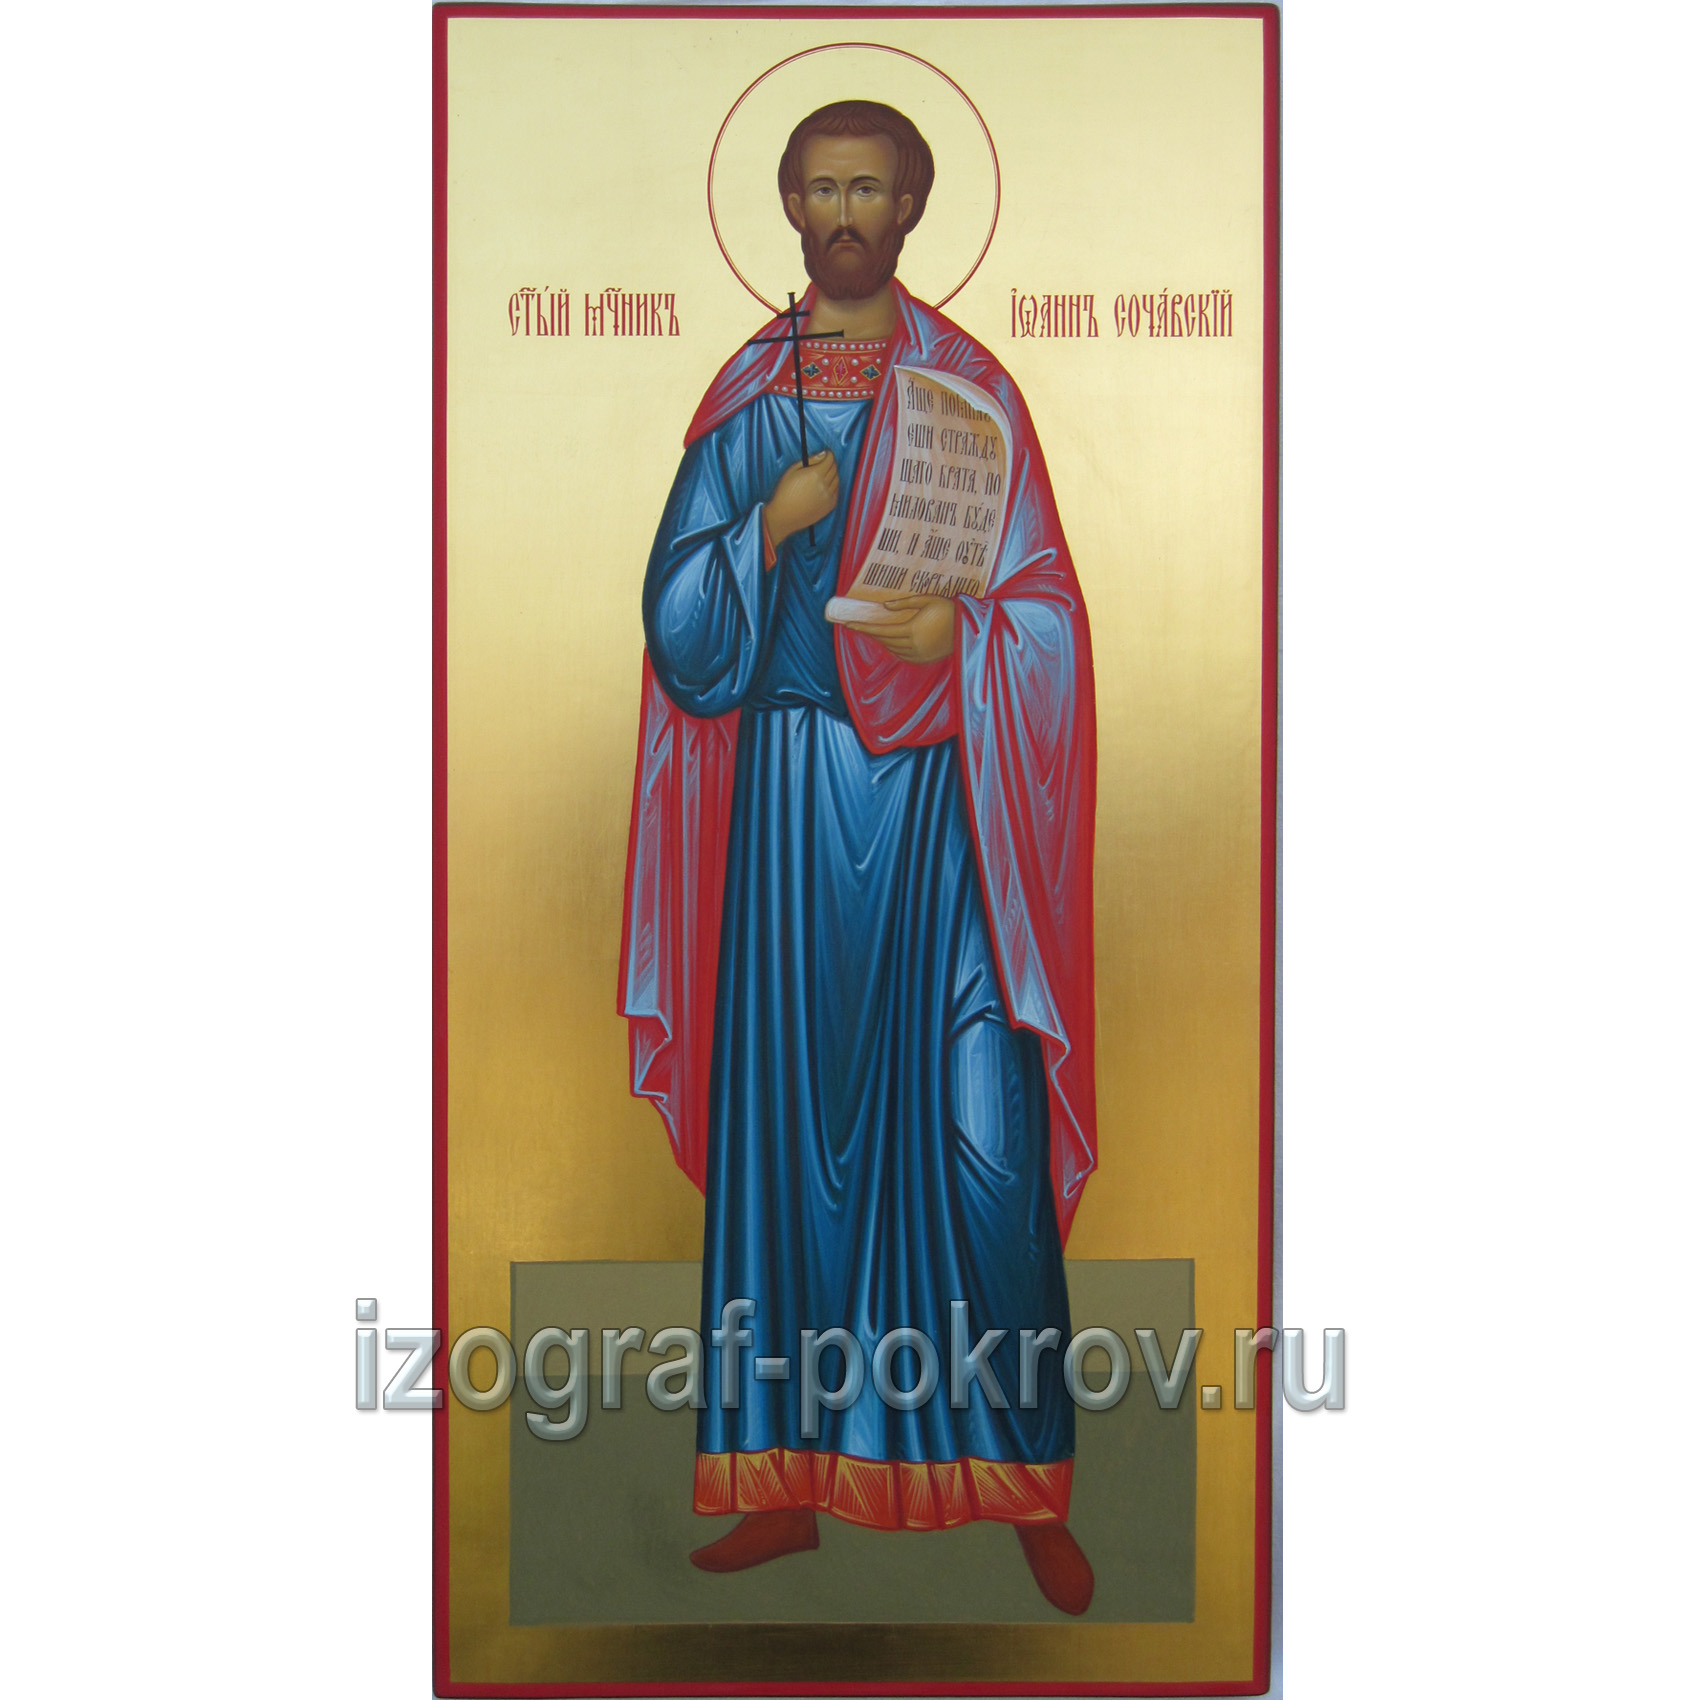 Икона Иоанн Сочавский на золоте